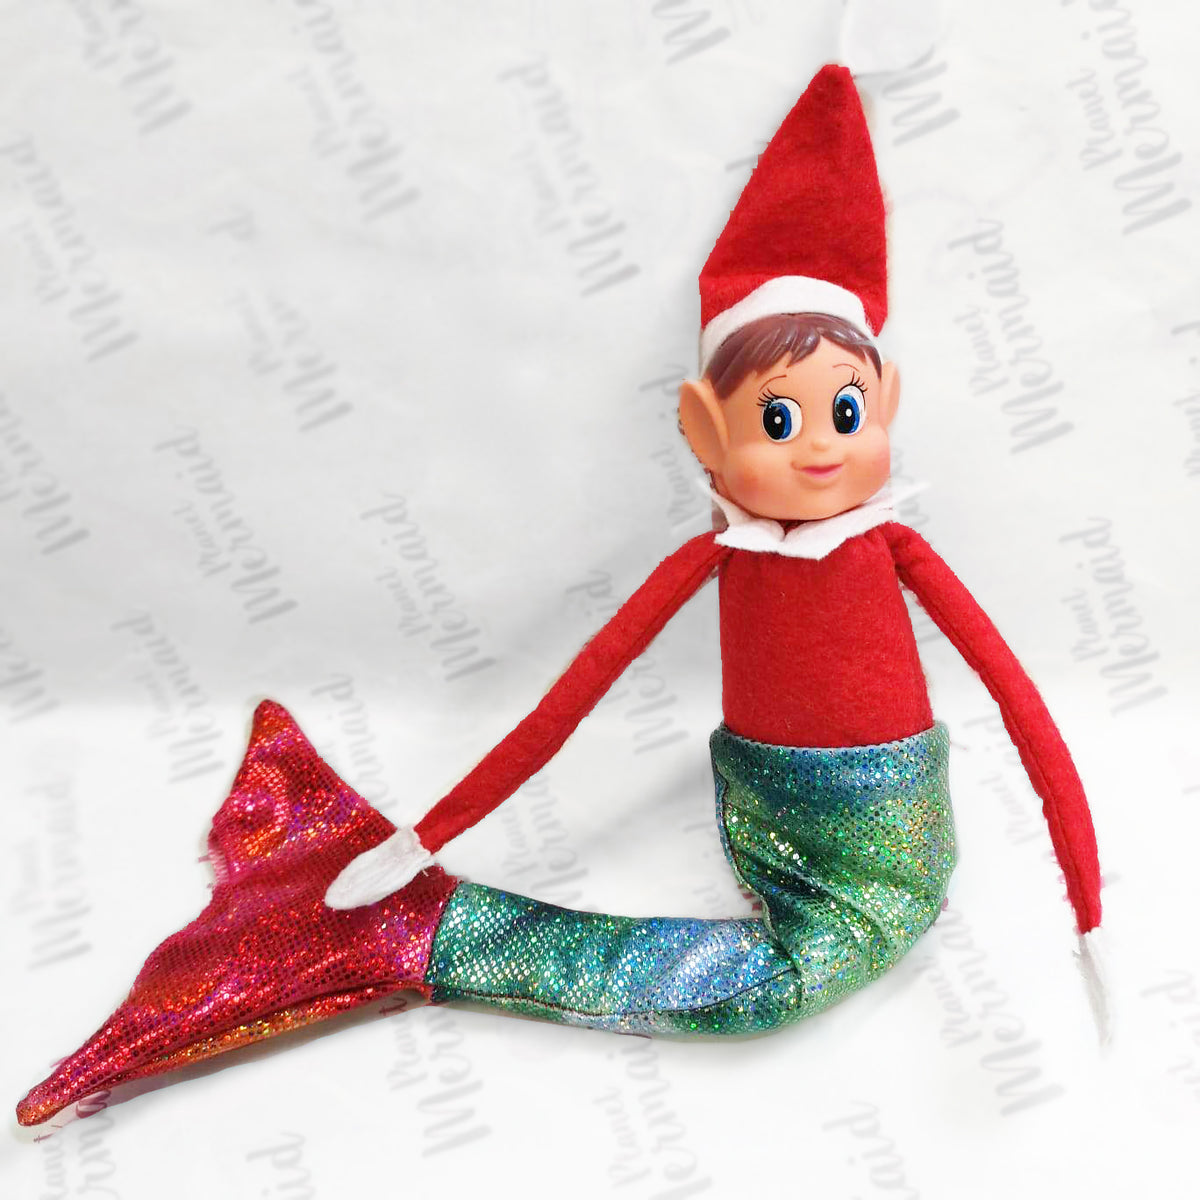 Mermaid Elf on the Shell - Planet Mermaid